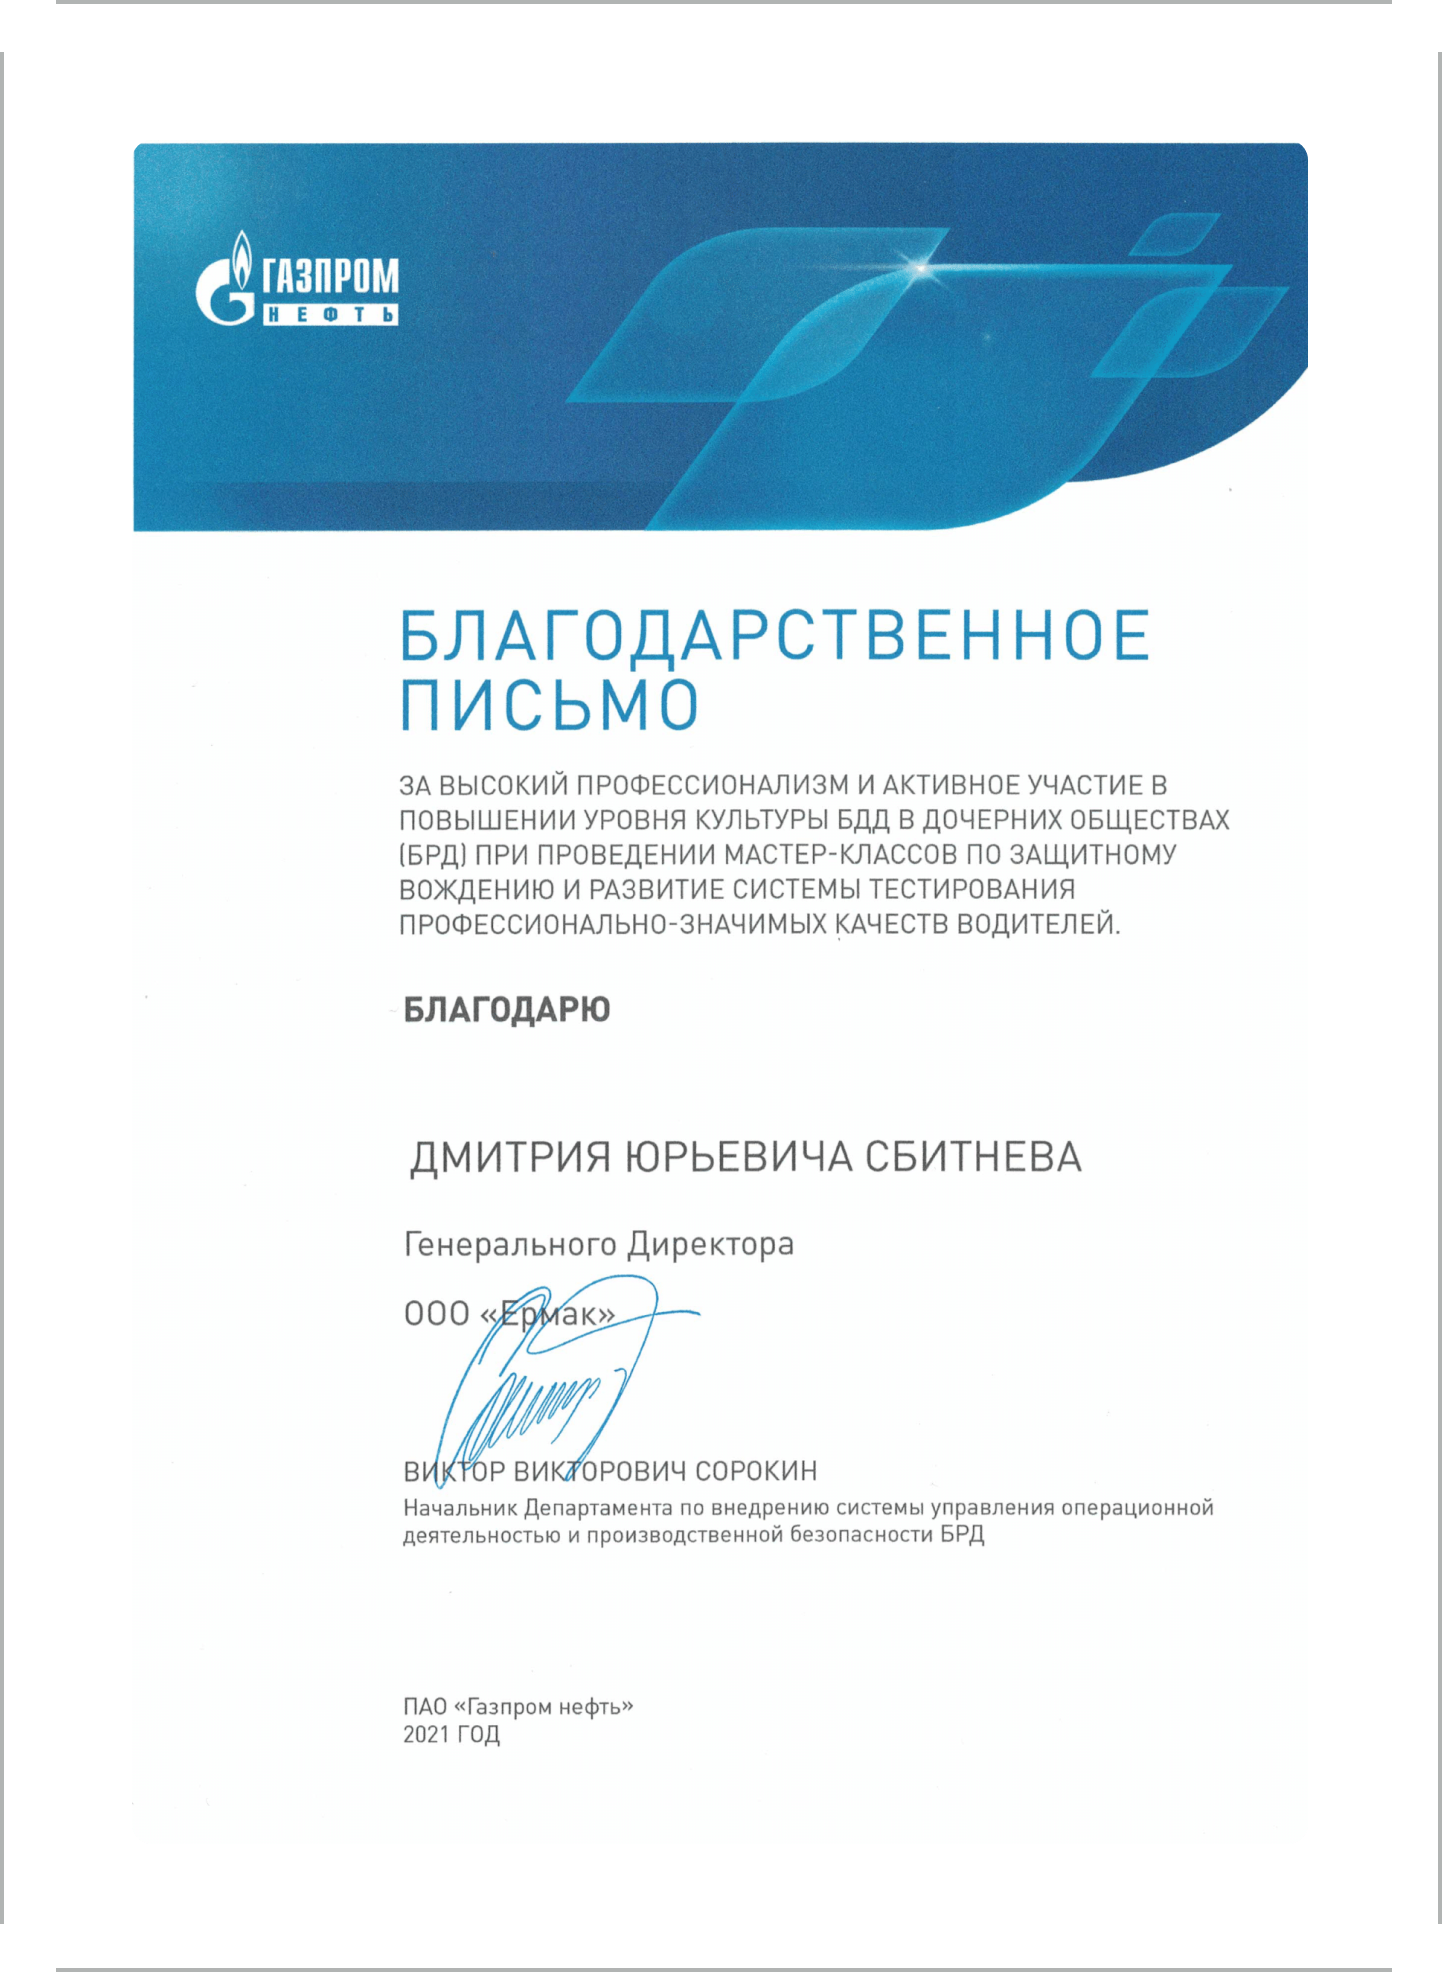 Благодарственное письмо от ПАО "Газпром нефть"